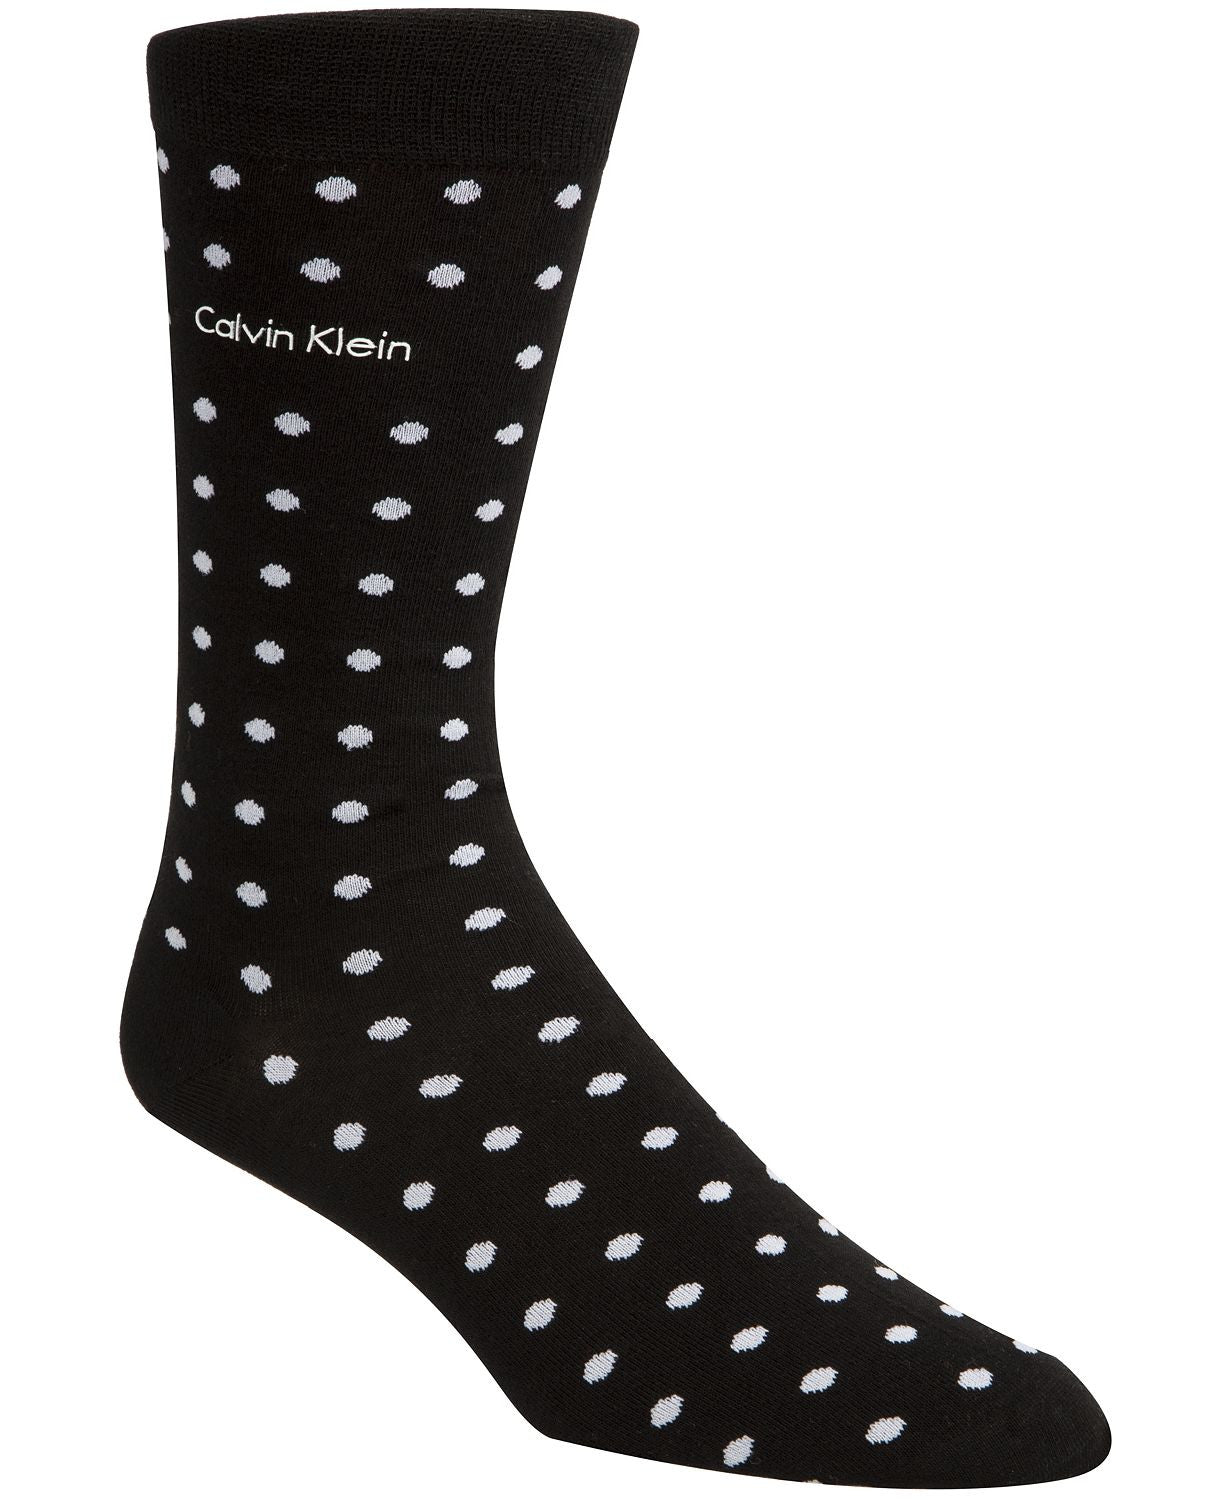 Calvin Klein Dot Dress Socks Black/white